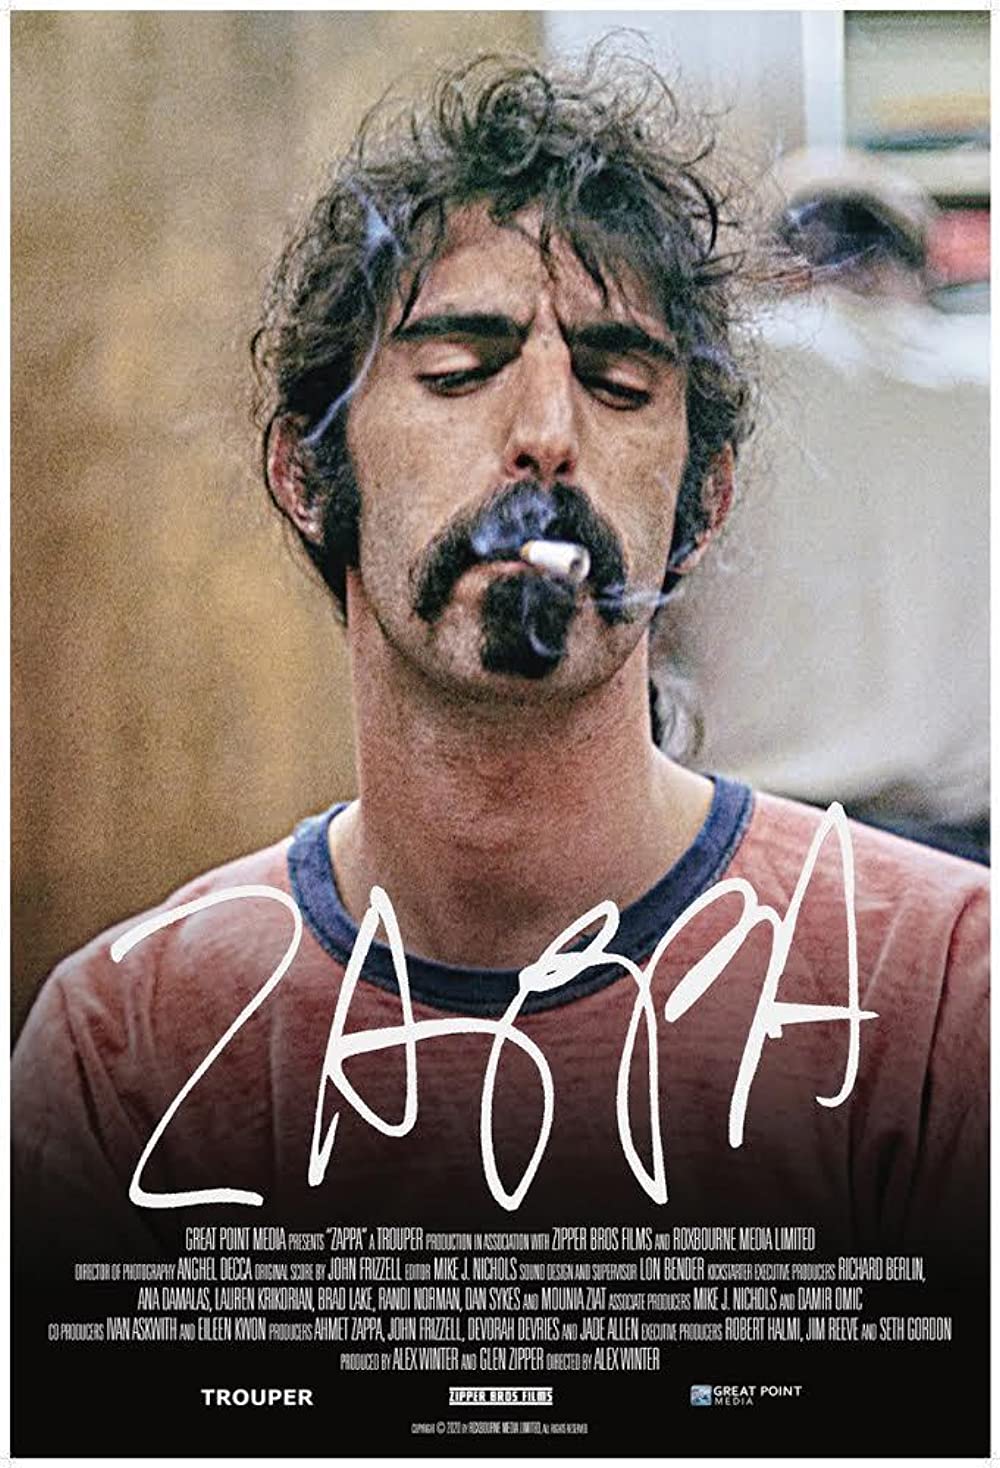 Filmbeschreibung zu Zappa (OV)